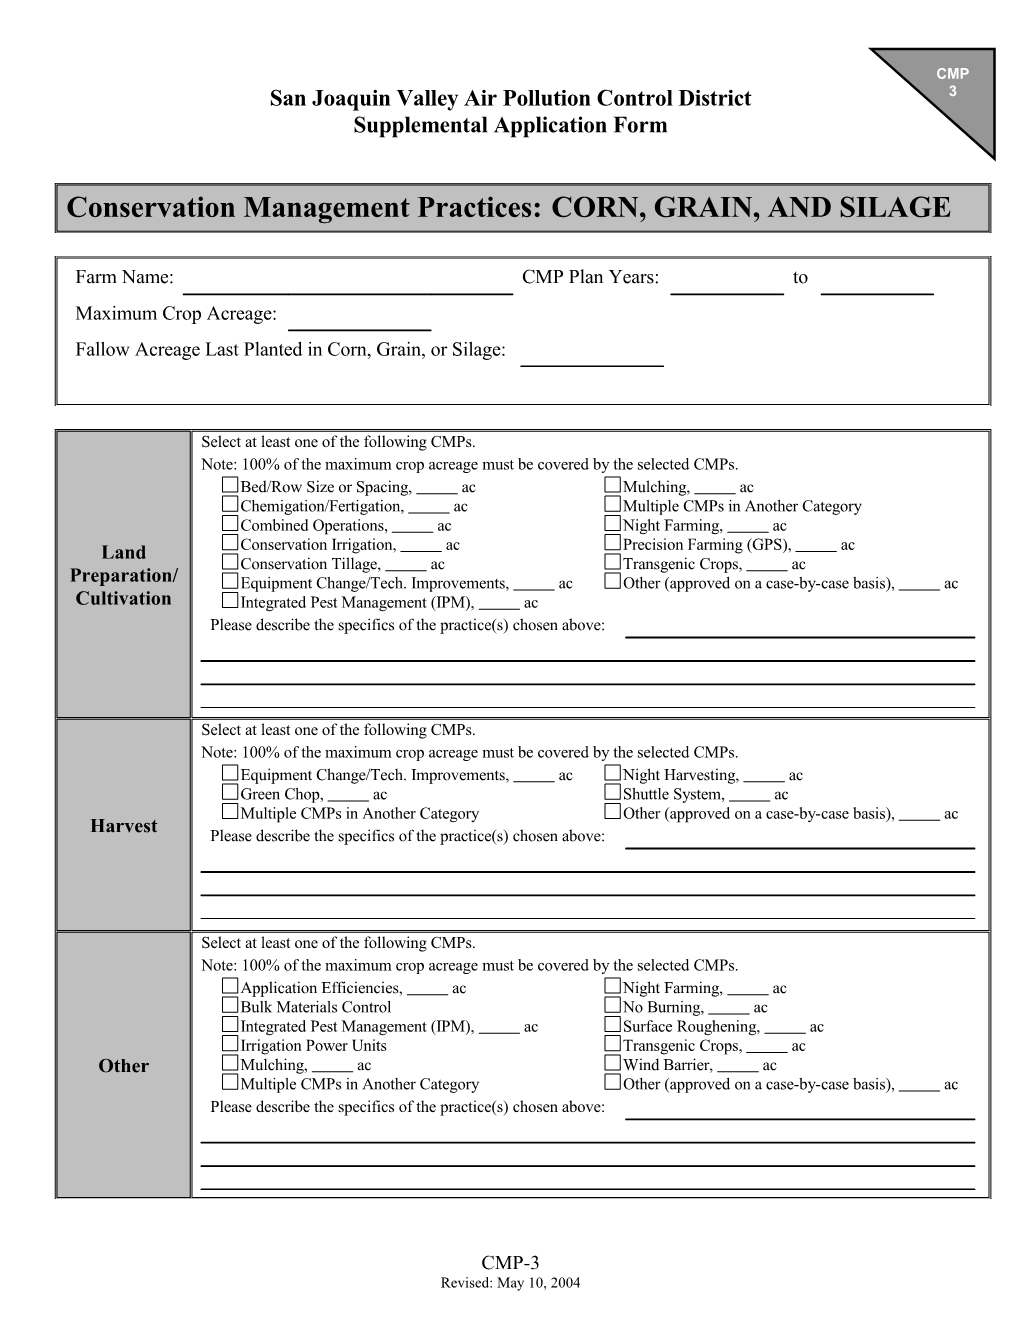 Grain Corn/Silage CMP Application